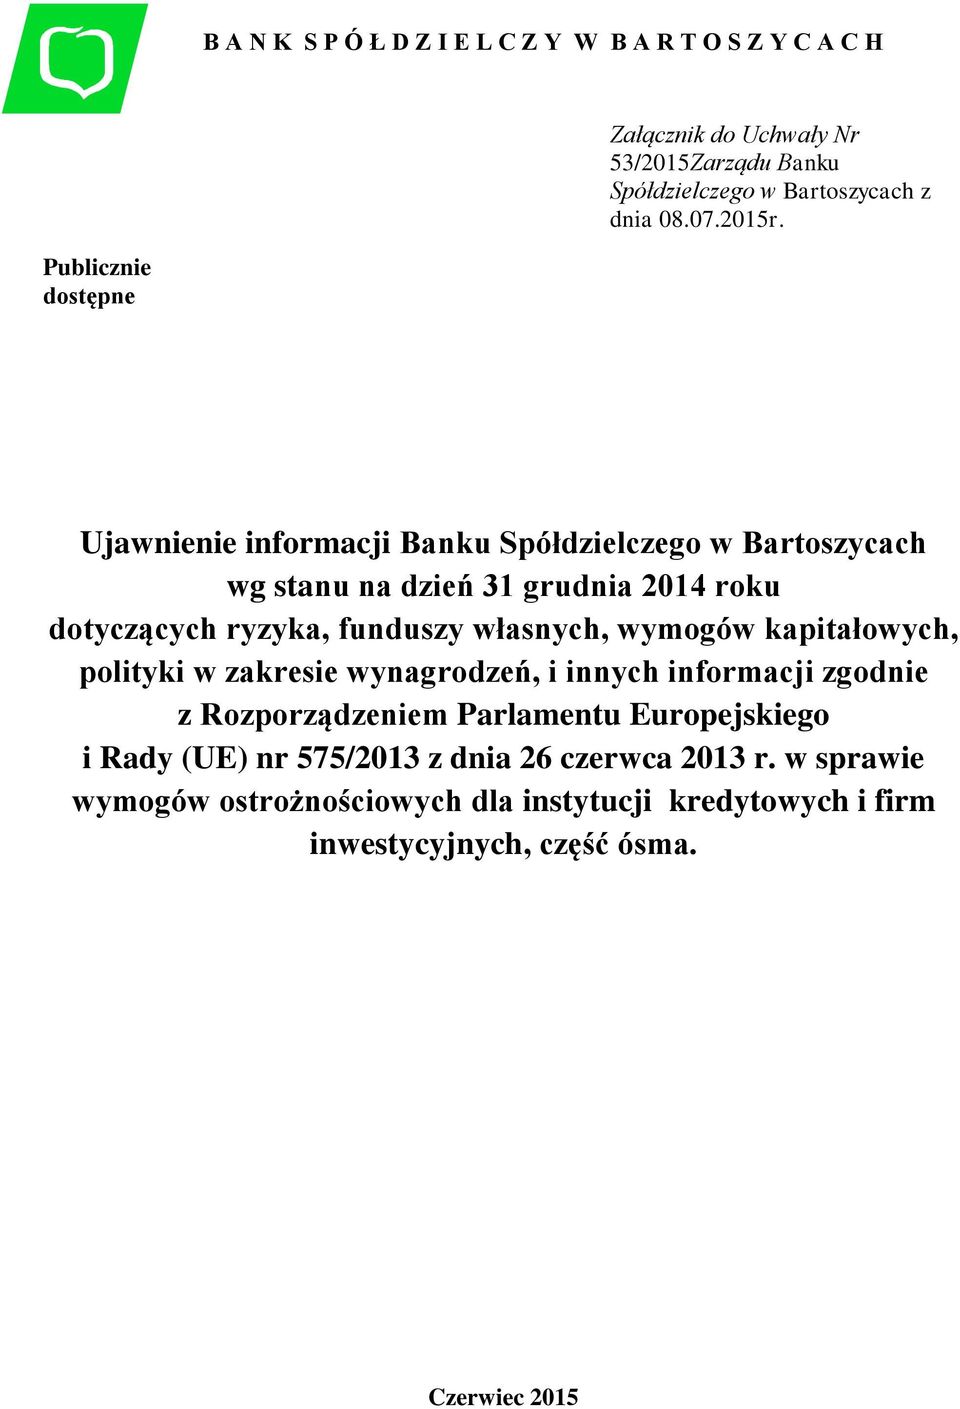 Publicznie dostępne Ujawnienie informacji Banku Spółdzielczego w Bartoszycach wg stanu na dzień 31 grudnia 2014 roku dotyczących ryzyka, funduszy